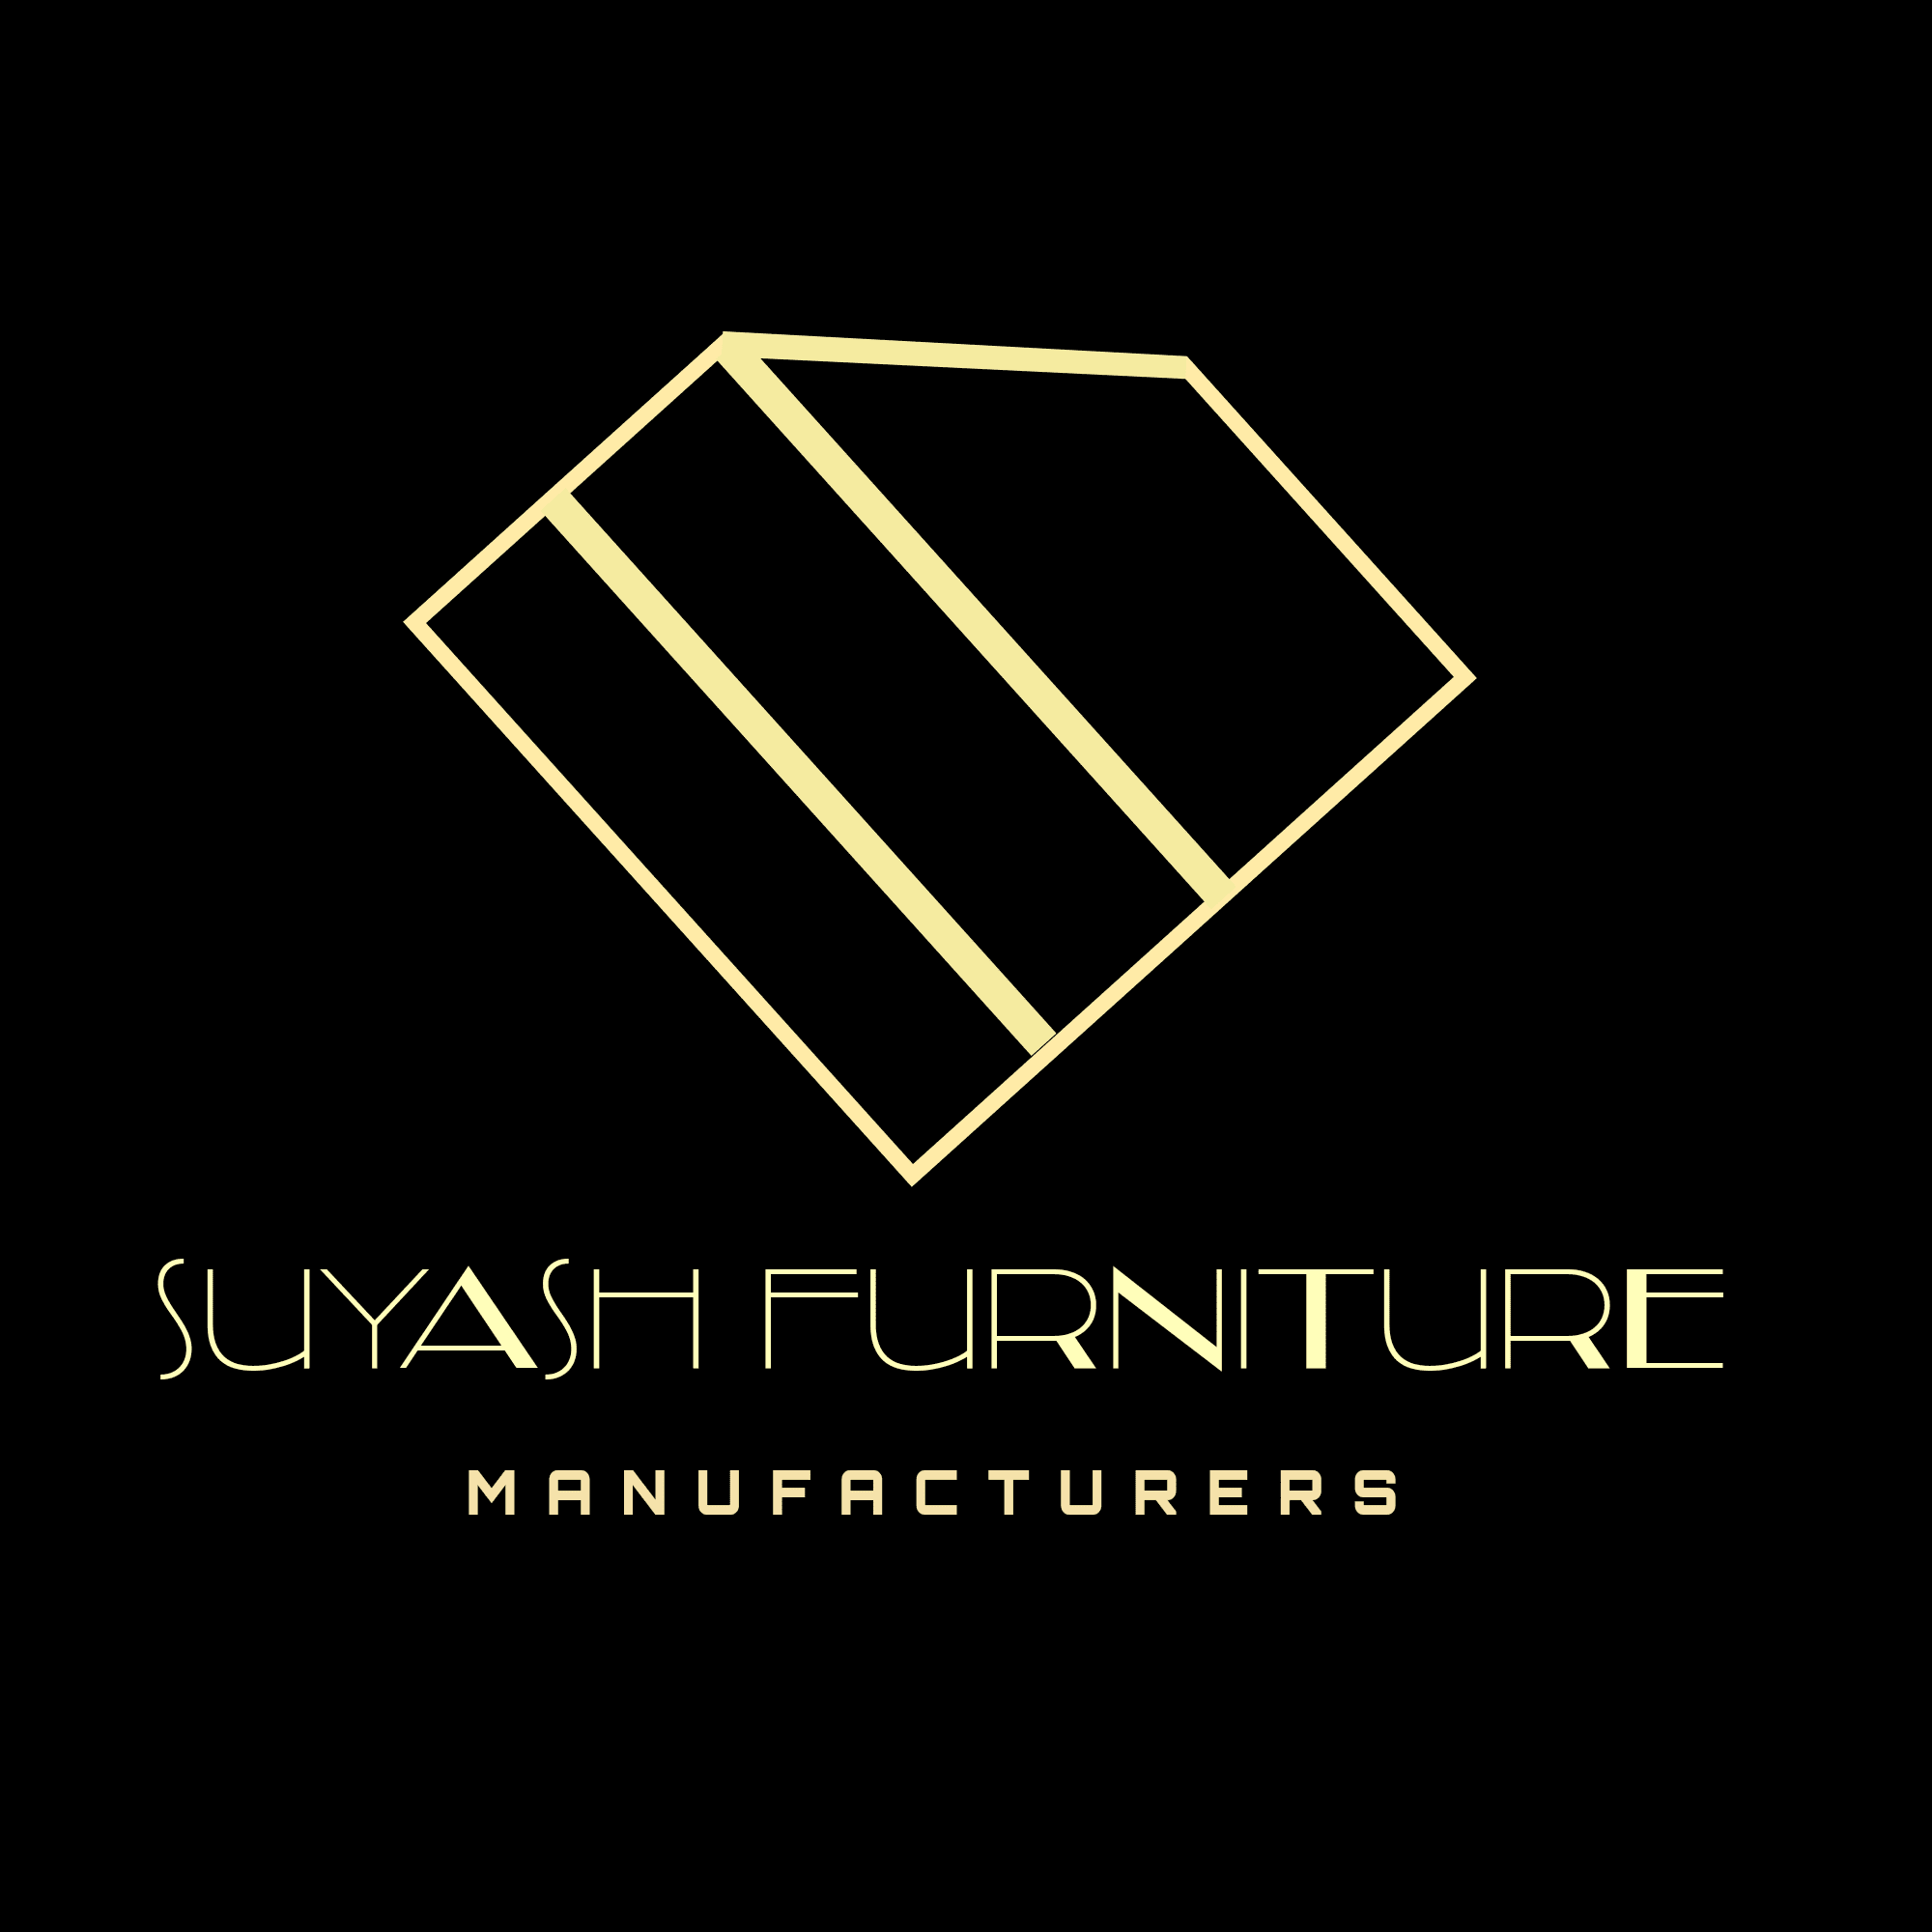 Suyash Furniture